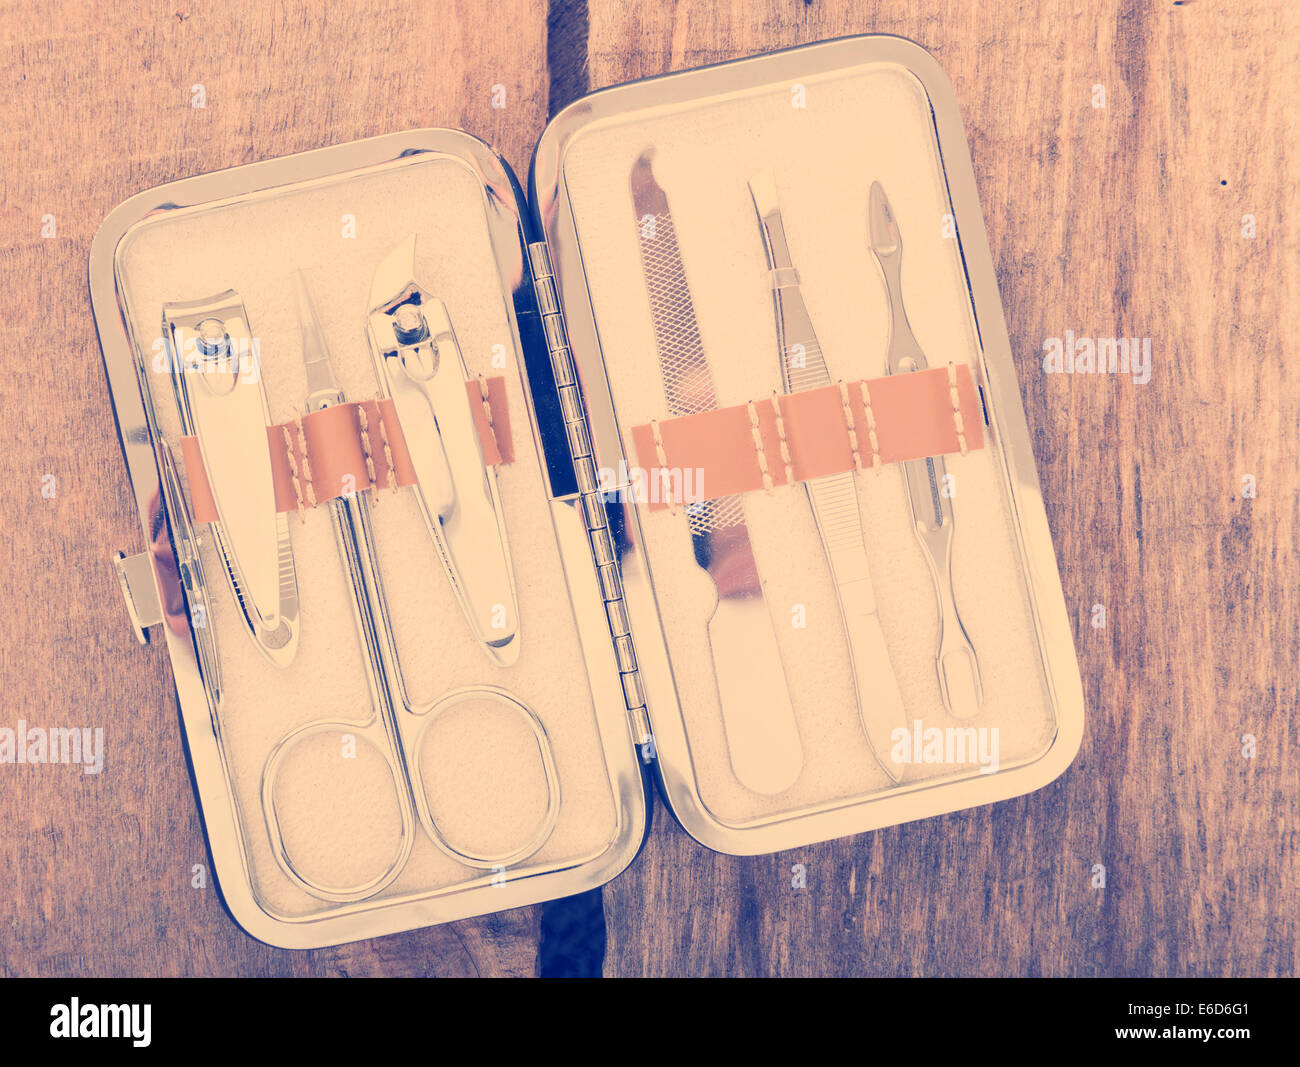 Klassische Metall Kit der Nagelscheren und Maniküre-Tools auf hölzernen Hintergrund mit Vintage-filter Stockfoto